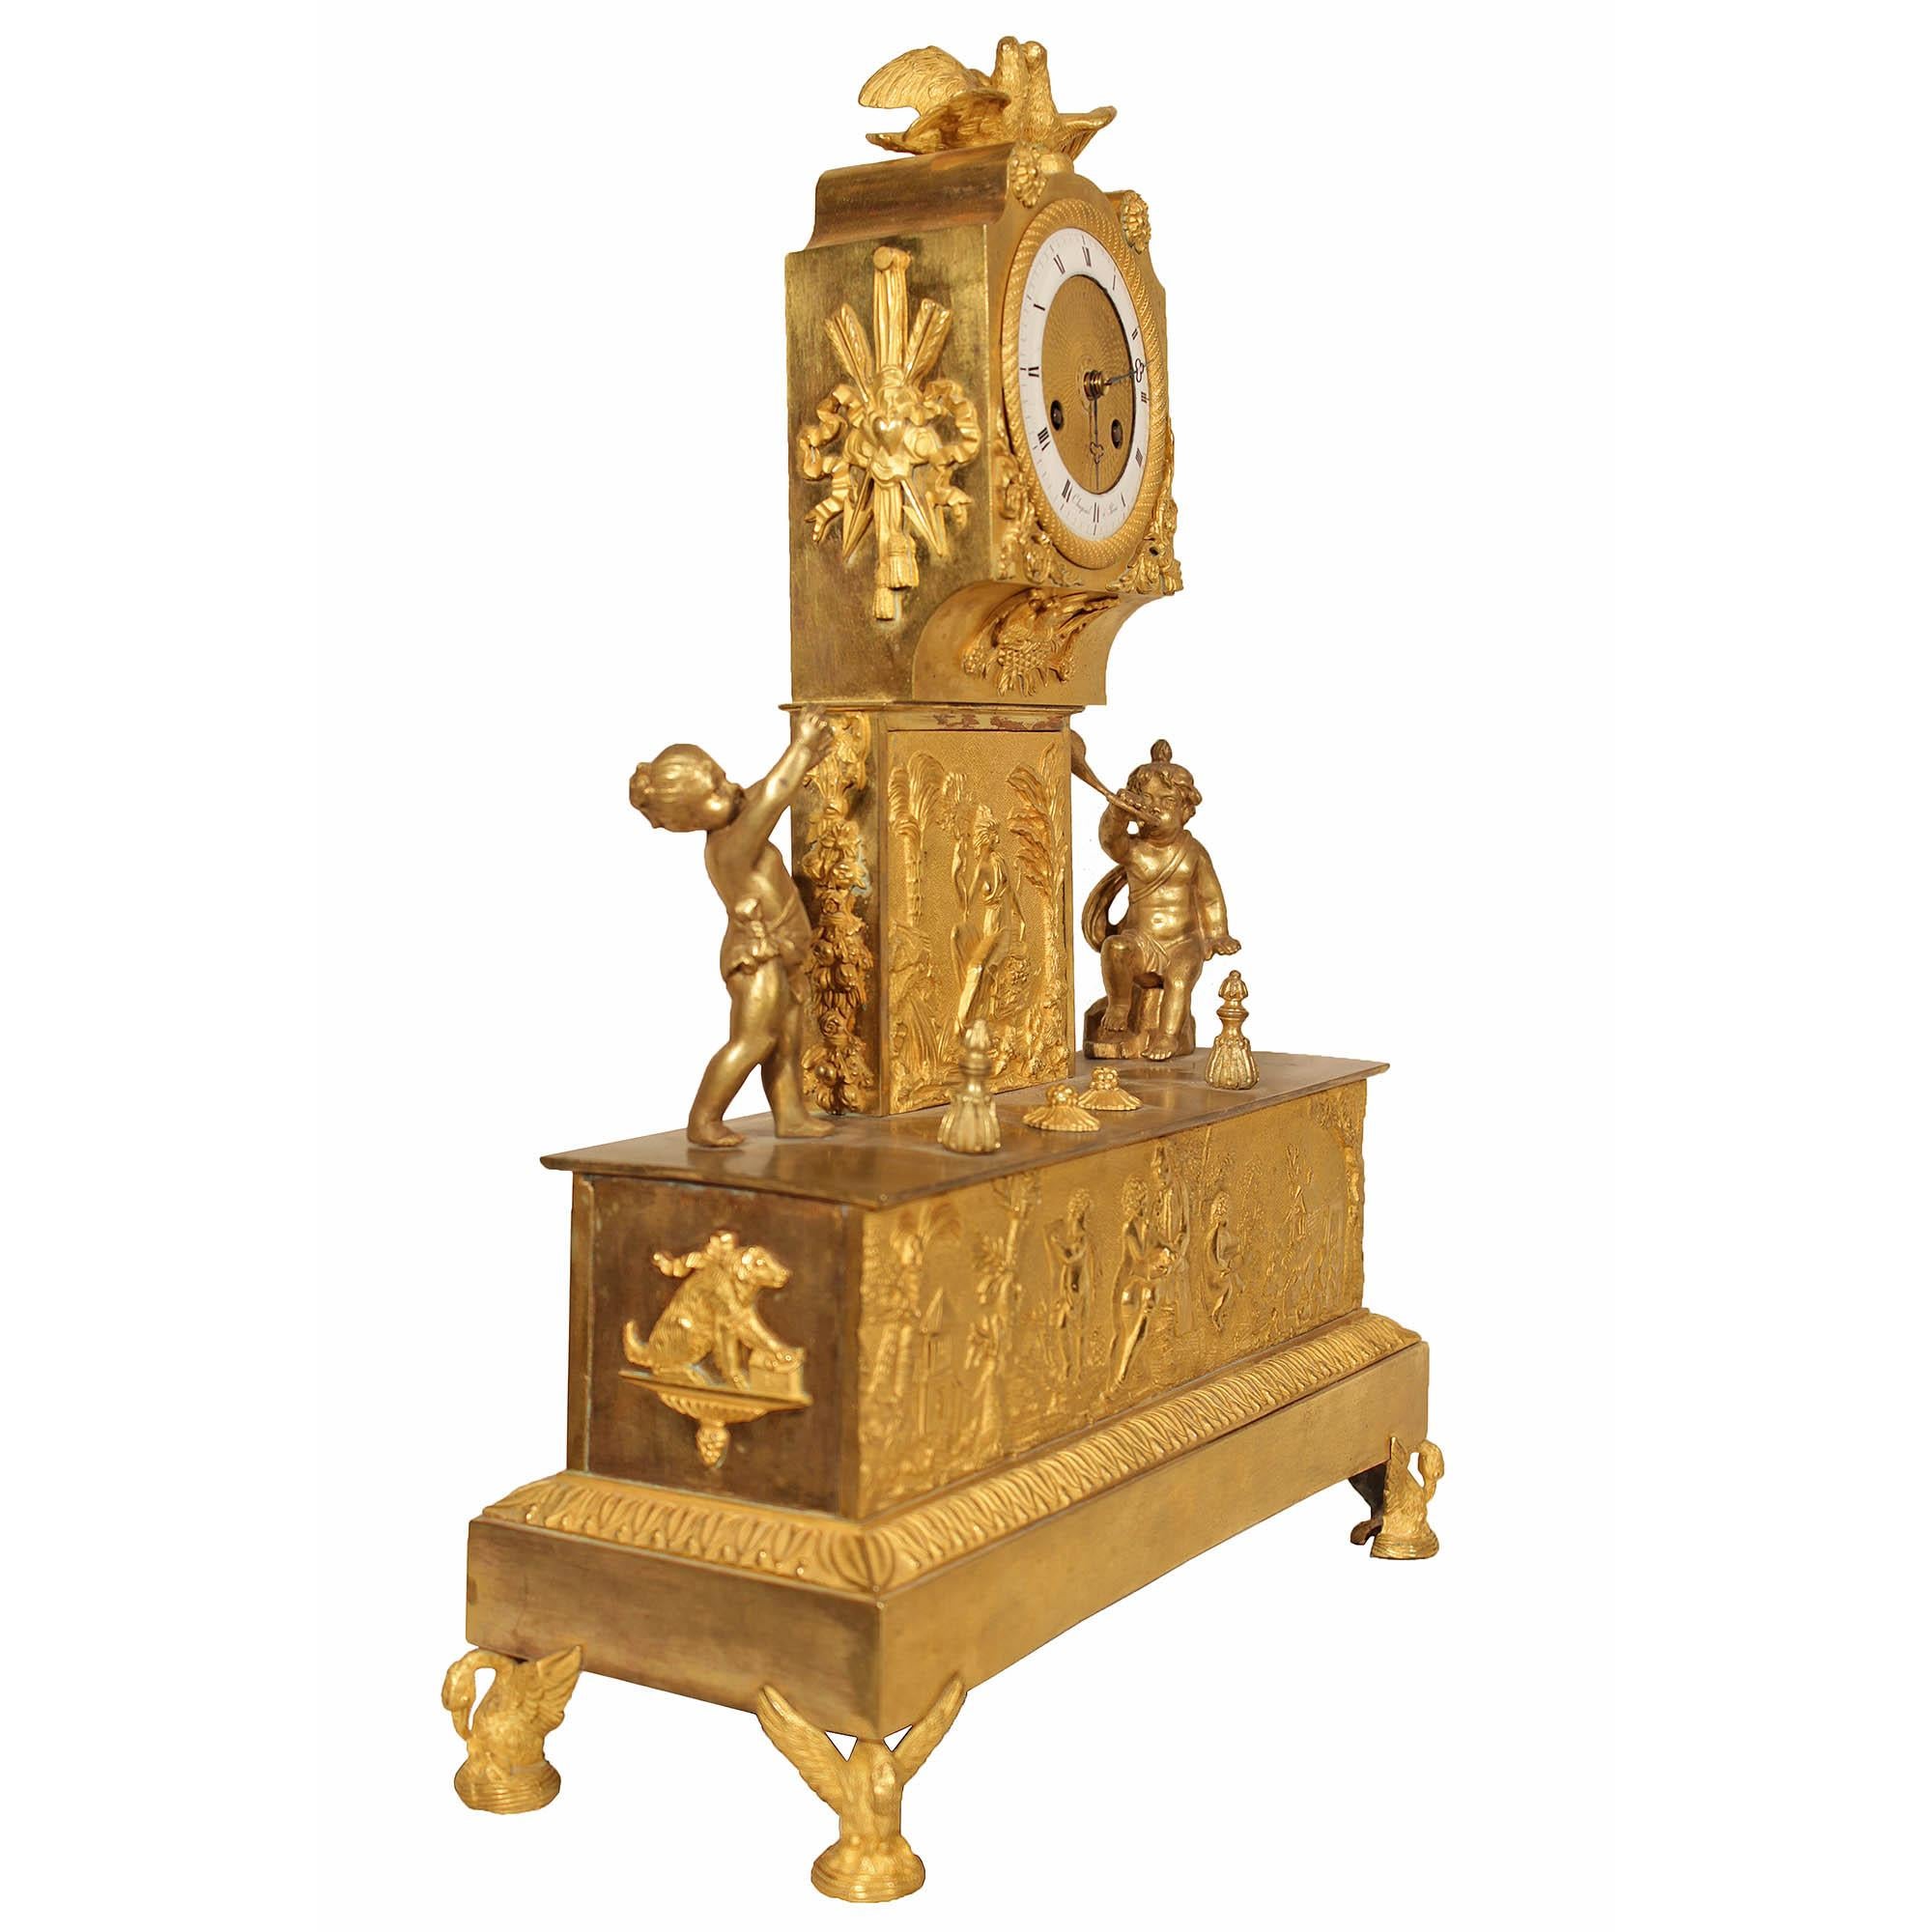 Eine spektakuläre und einzigartige Französisch Anfang des 19. Jahrhunderts Louis XVI st. ormolu Kaminsims Uhr, von Chapsal a Paris unterzeichnet. Die Uhr steht auf fein ziselierten Schwanenträgern unter einem rechteckigen Sockel. An der Fassade